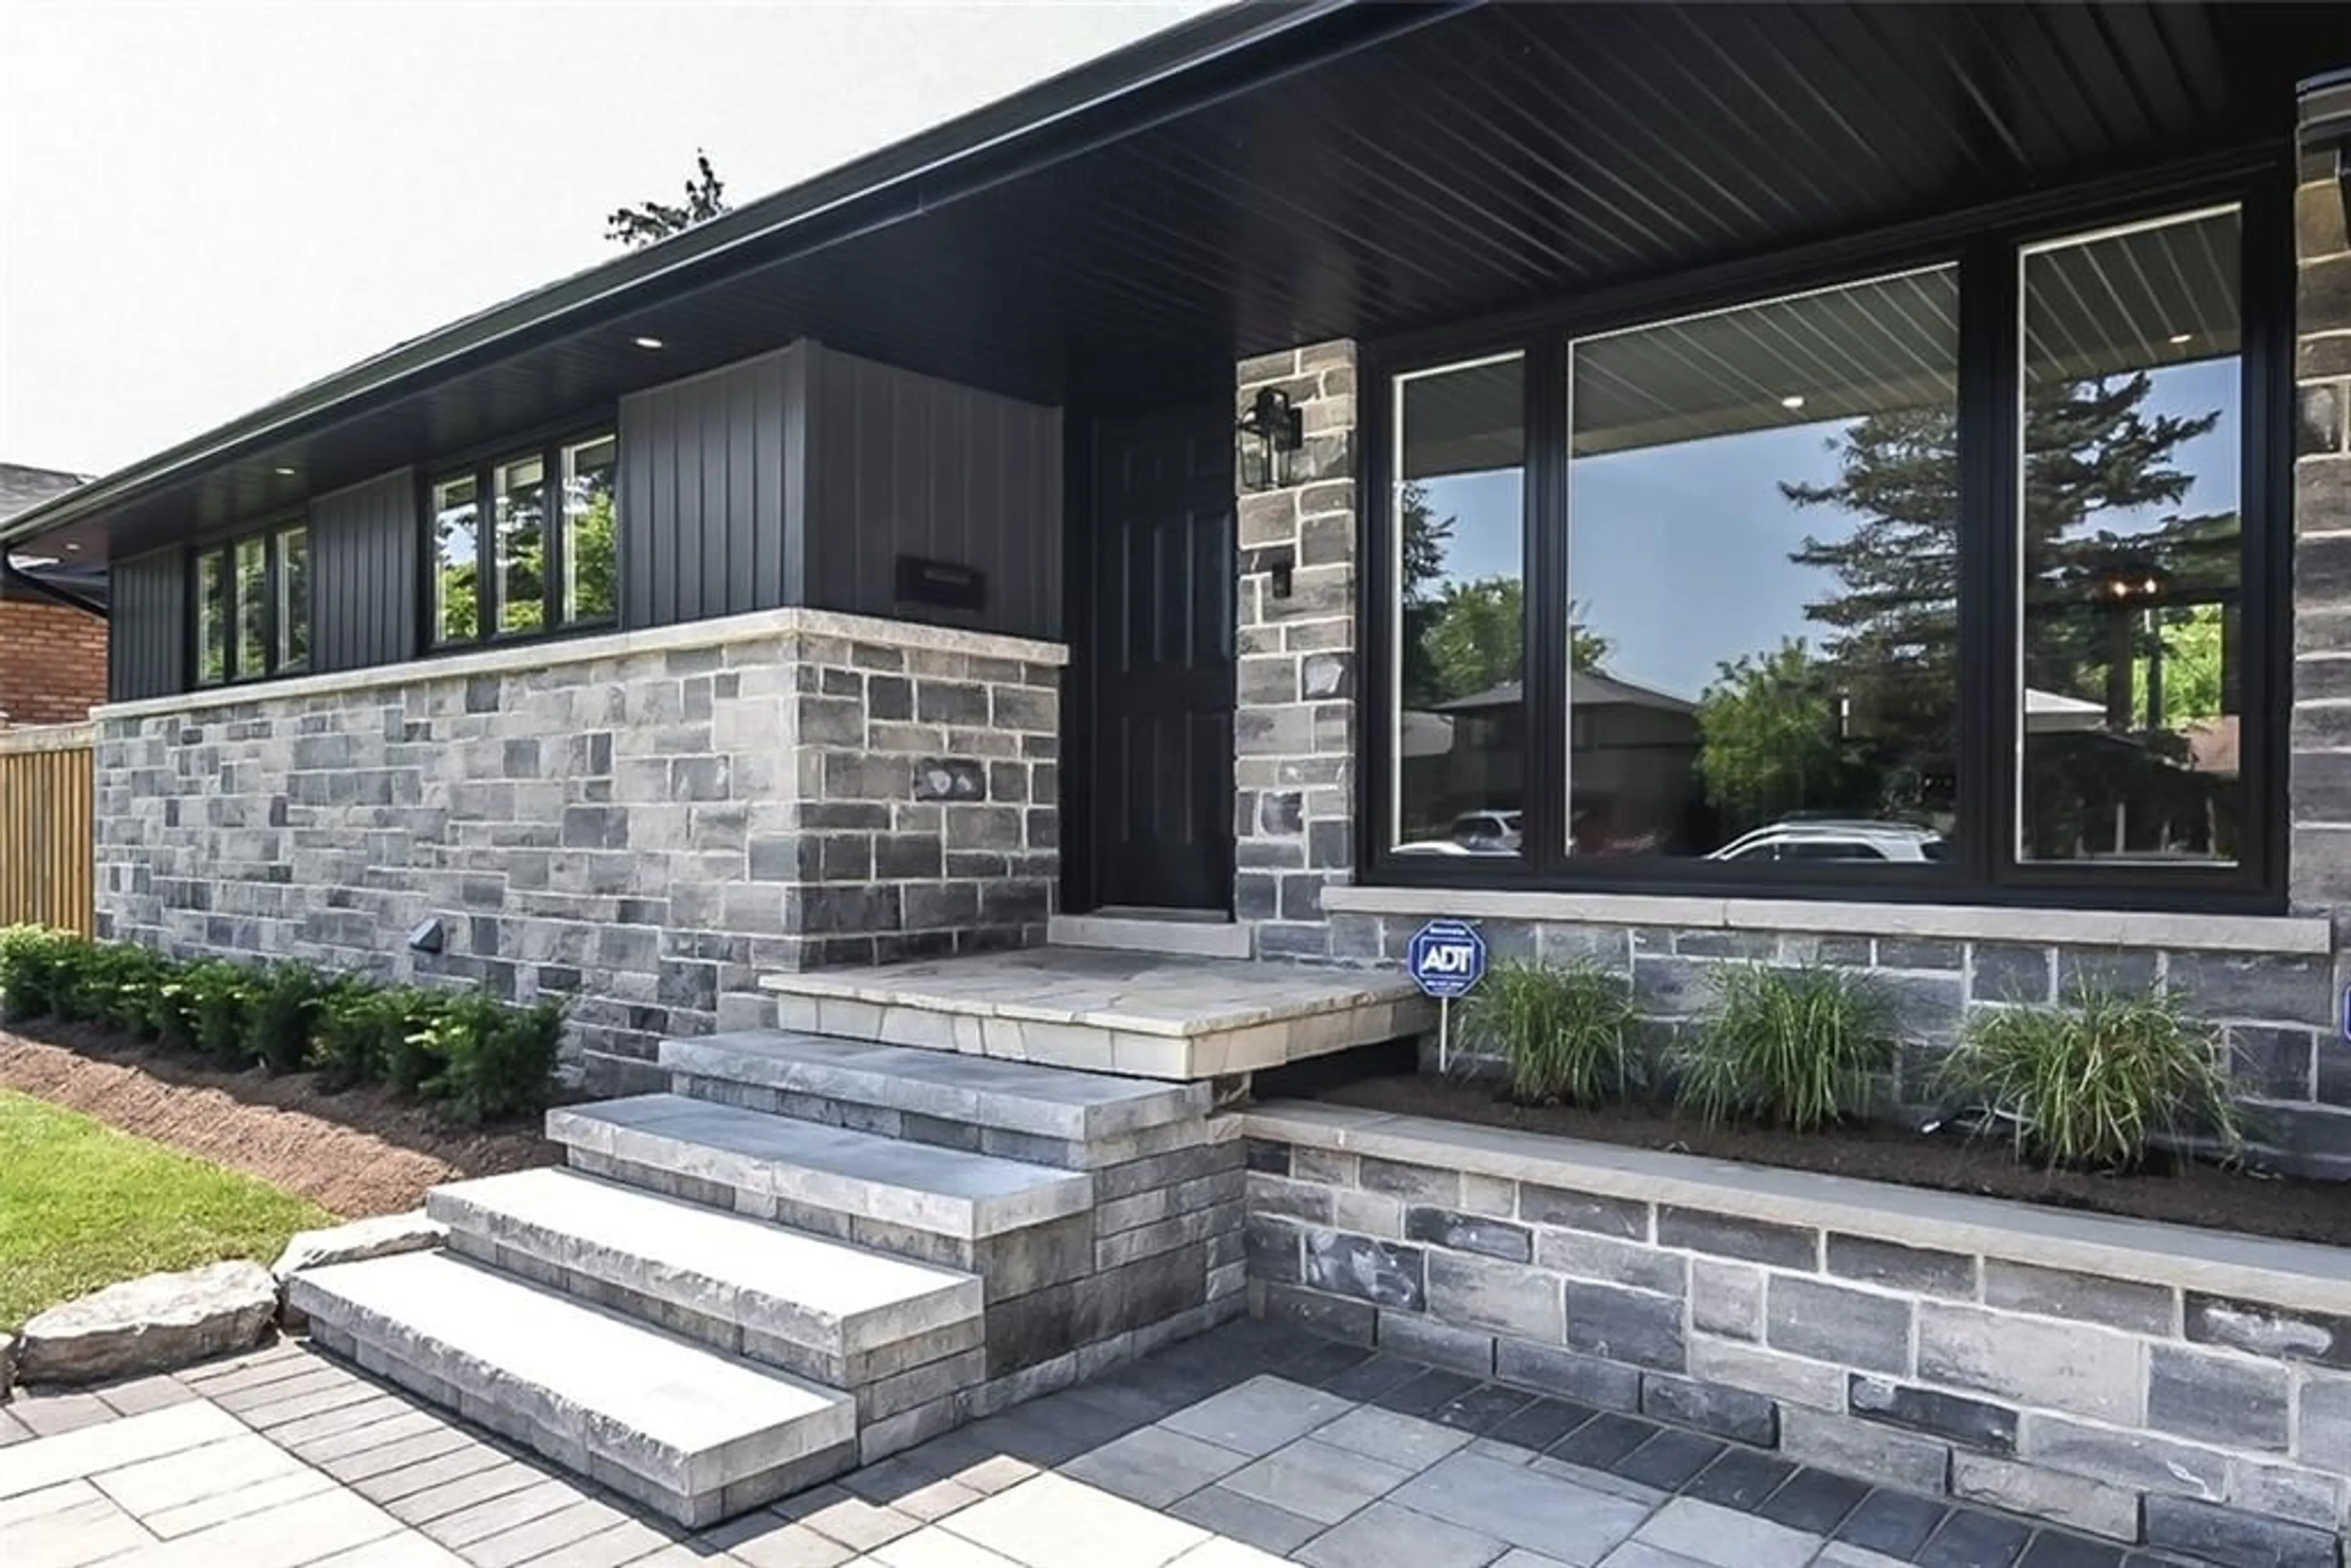 Home with brick exterior material for 118 SENECA Dr, Ancaster Ontario L9G 3B9